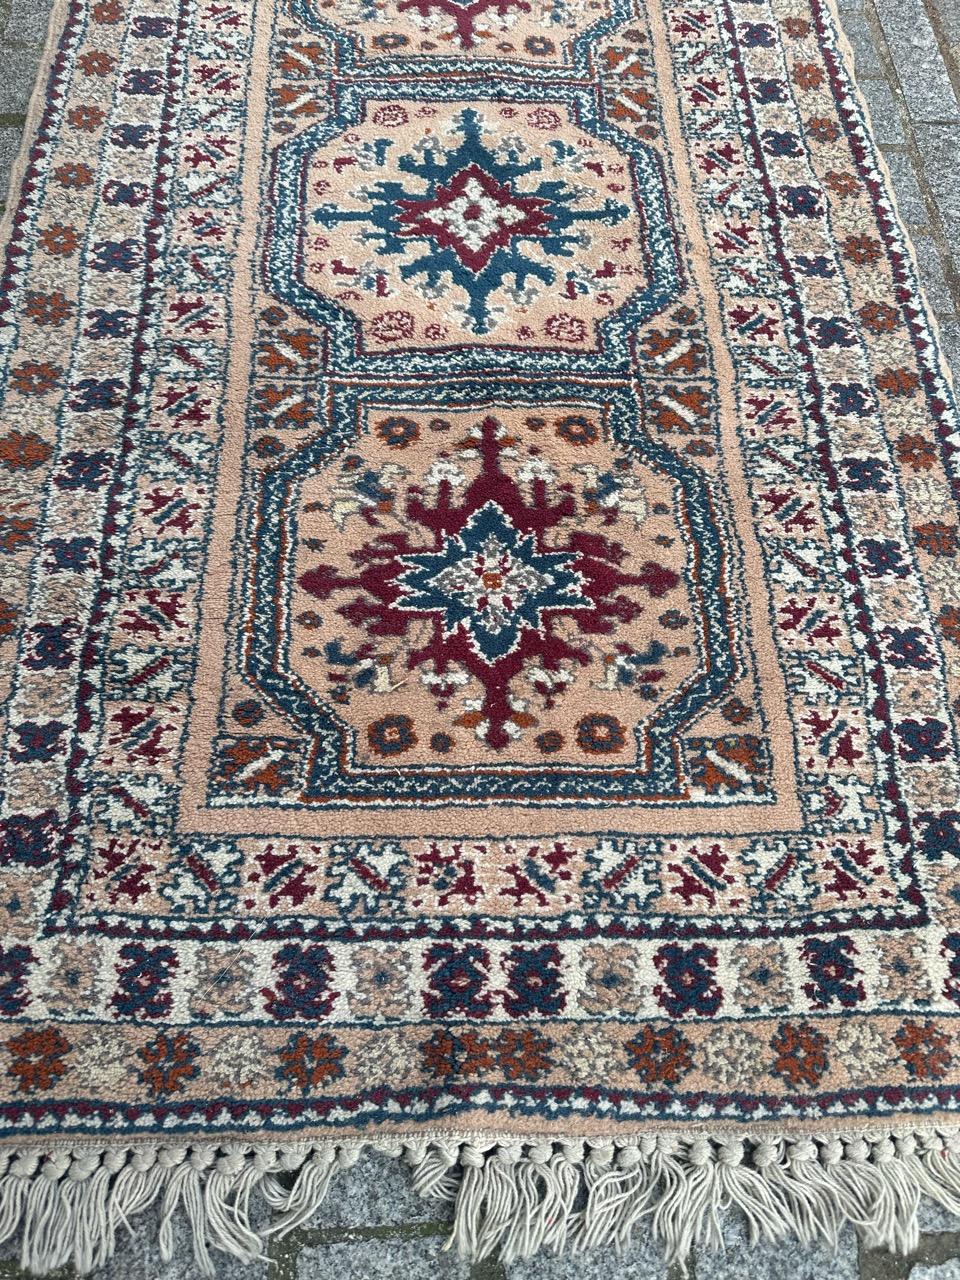 Hübscher marokkanischer Teppich aus der Mitte des Jahrhunderts mit schönem geometrischem und Tribal-Muster und schönen Farben mit rosa, lila, blau, grau, orange und weiß, komplett handgeknüpft mit Wolle auf Wollbasis 

✨✨✨
